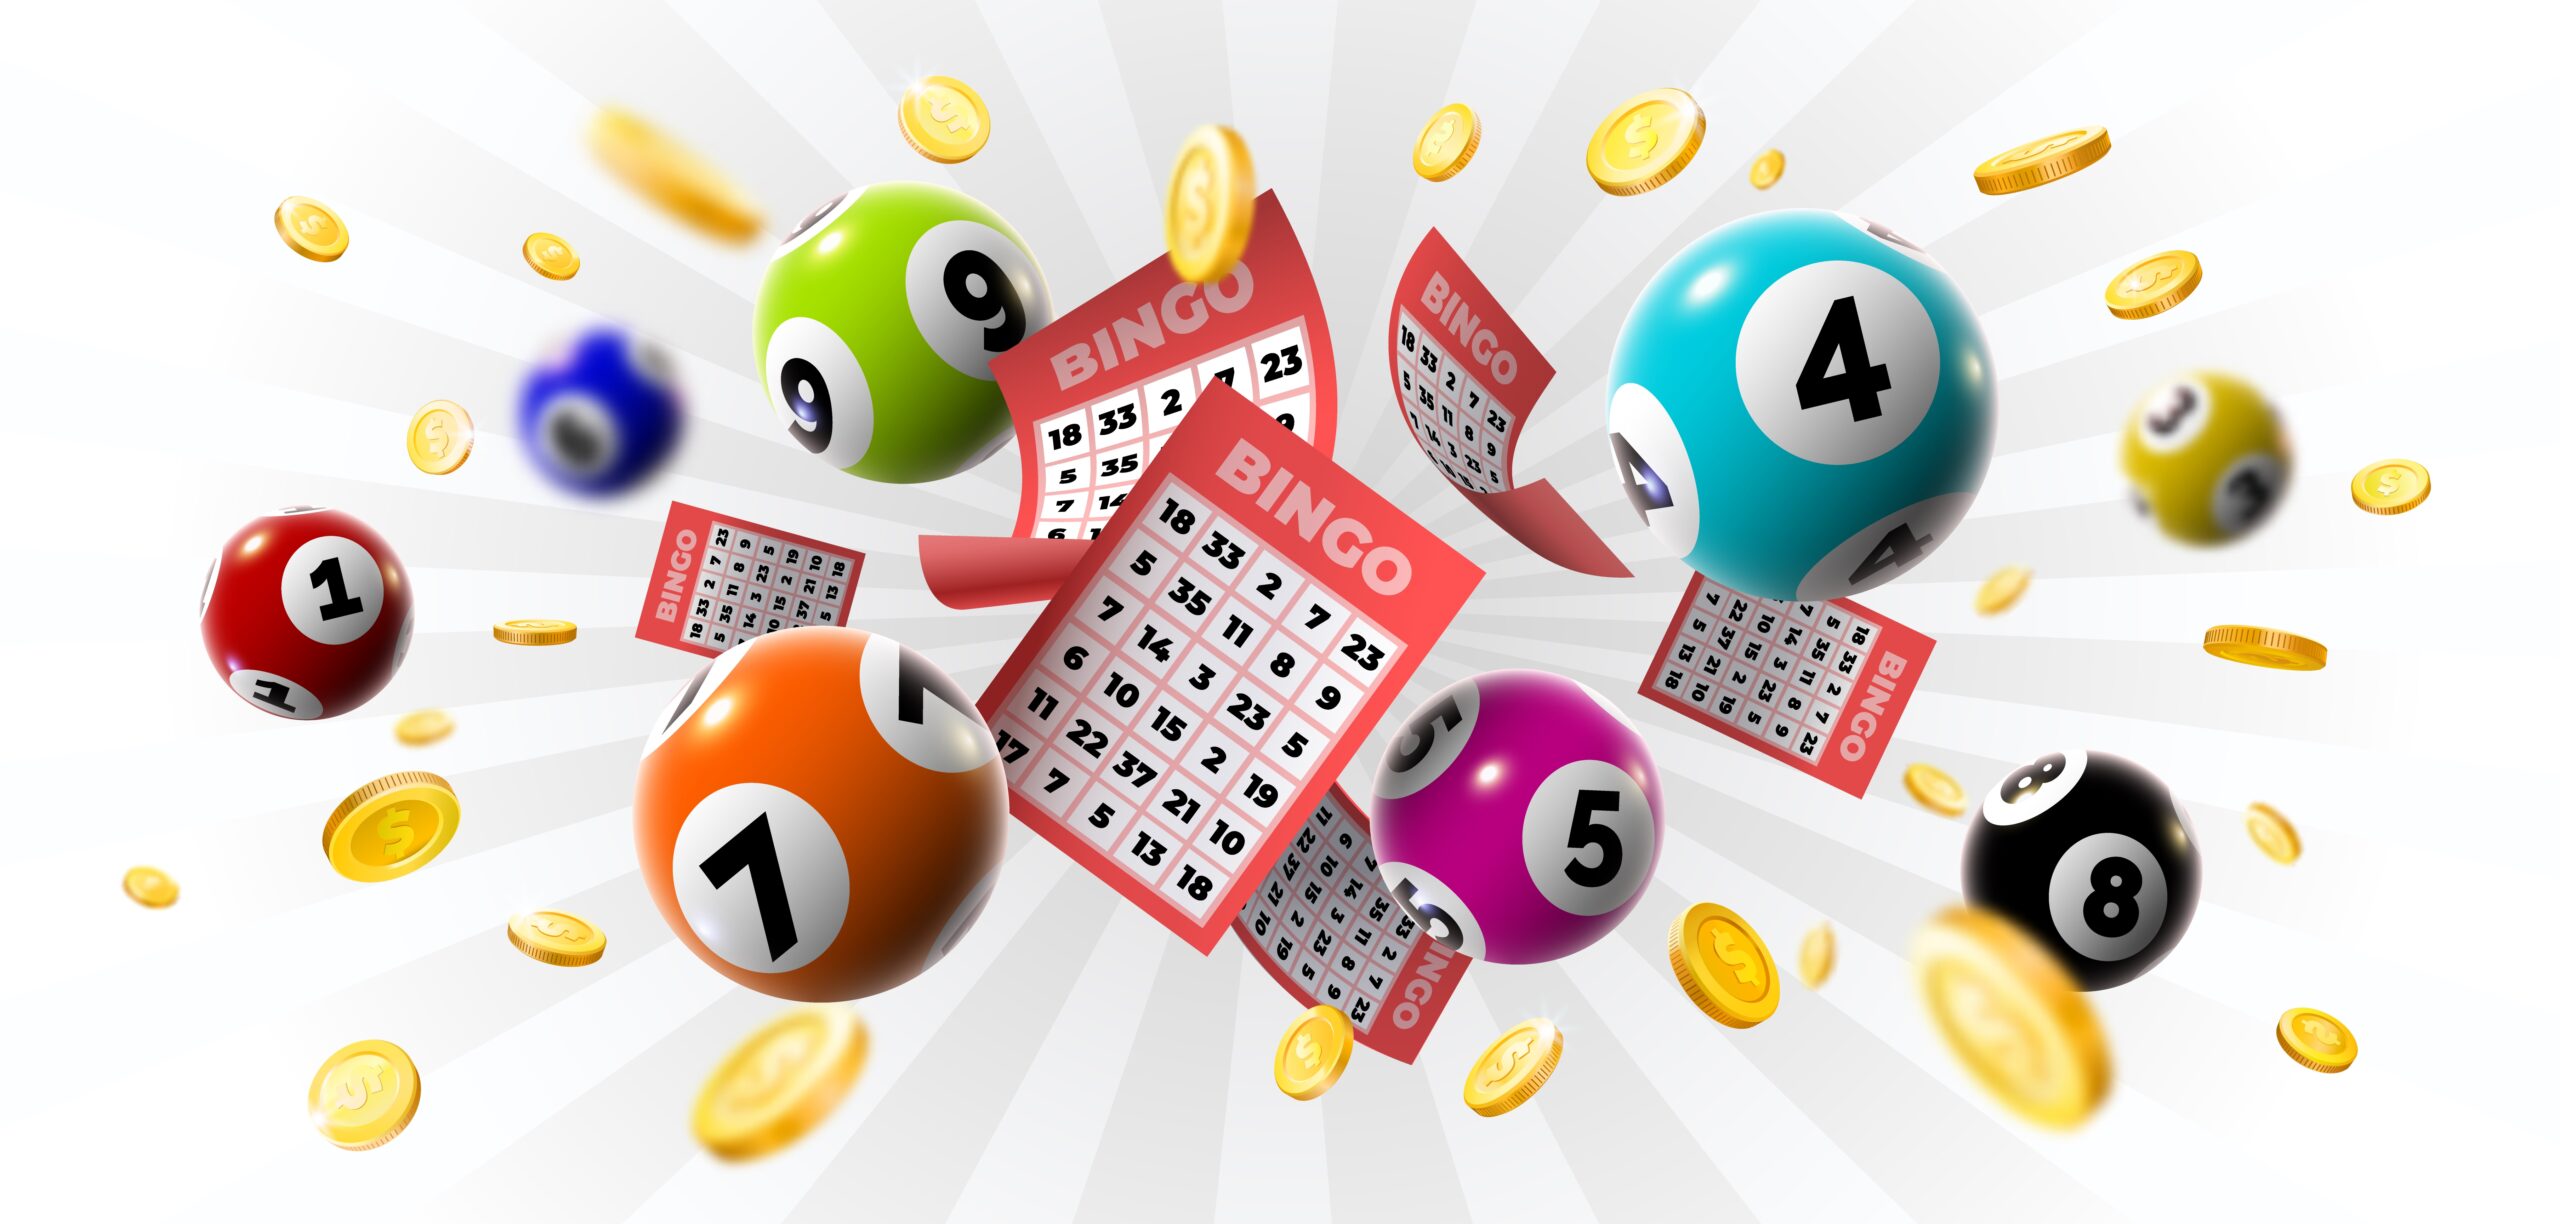 Understanding popular bingo calls